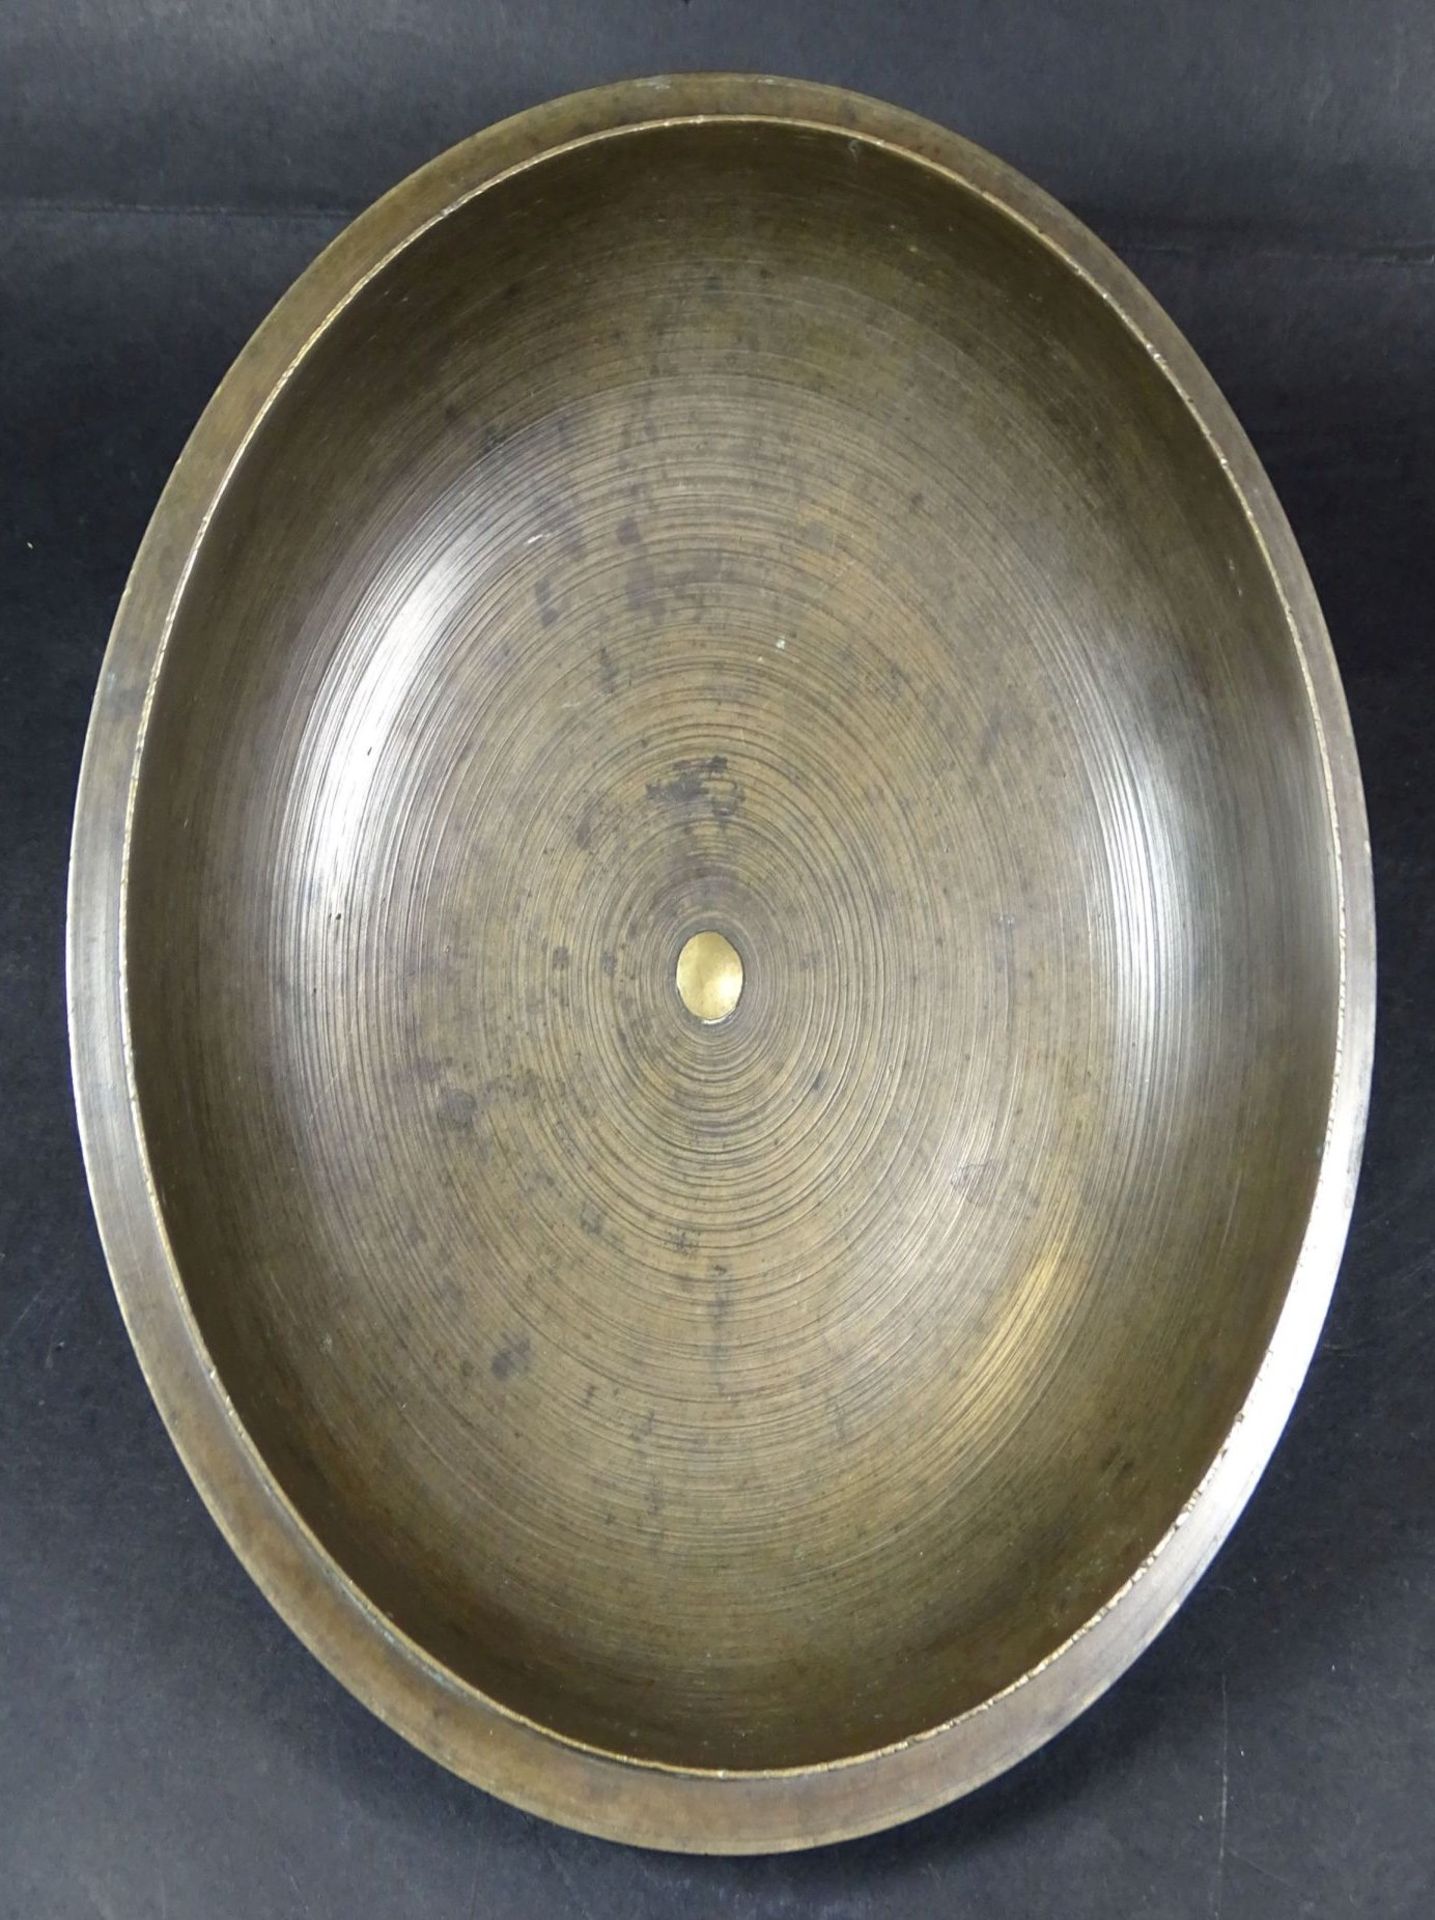 grosser Bronze Barock Deckeltopf um 1700, Deckel mit Ziermonogramme, H-17 cm, D-20 cm, 3,4 kg, in B - Bild 5 aus 8